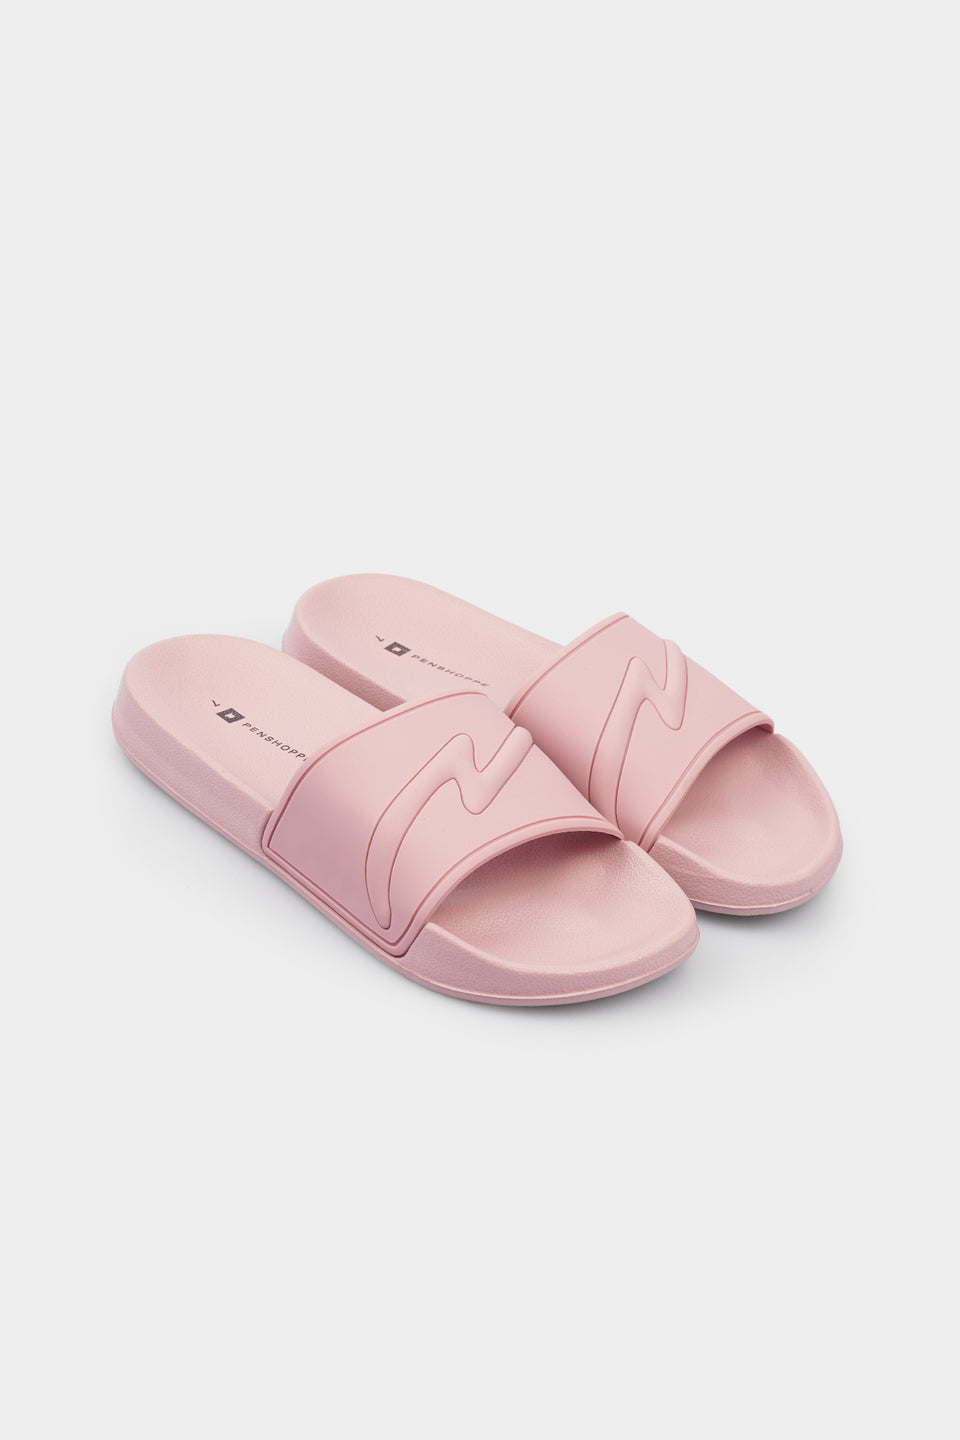 penshoppe slippers for girls